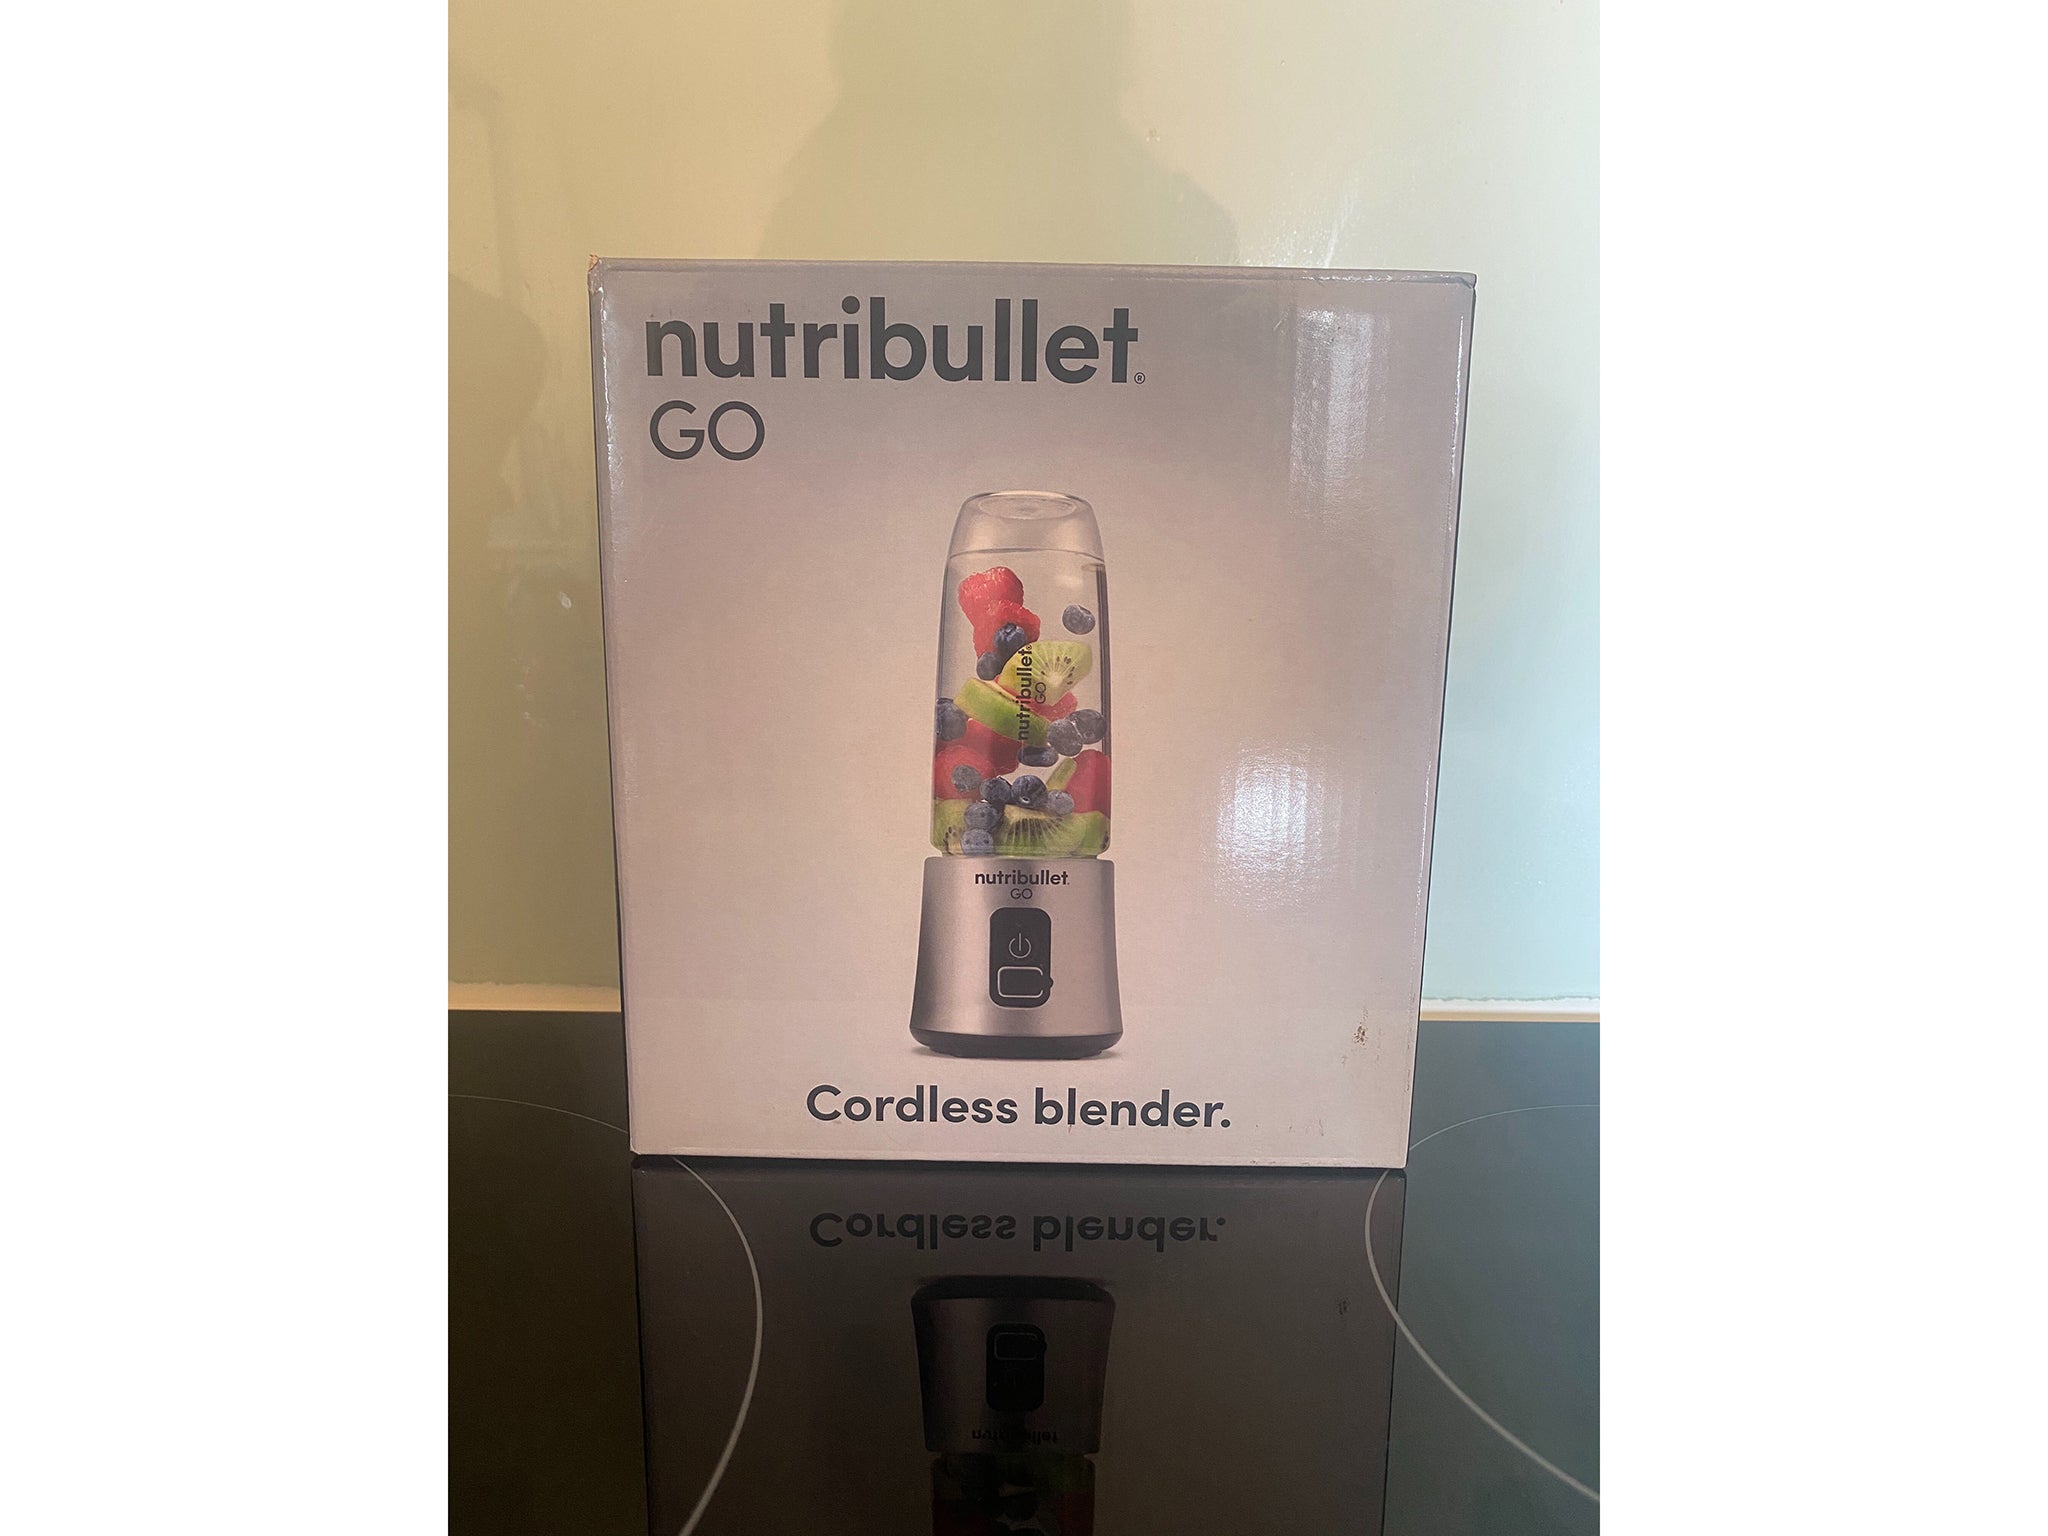 NutriBullet Go cordless blender review - Reviewed